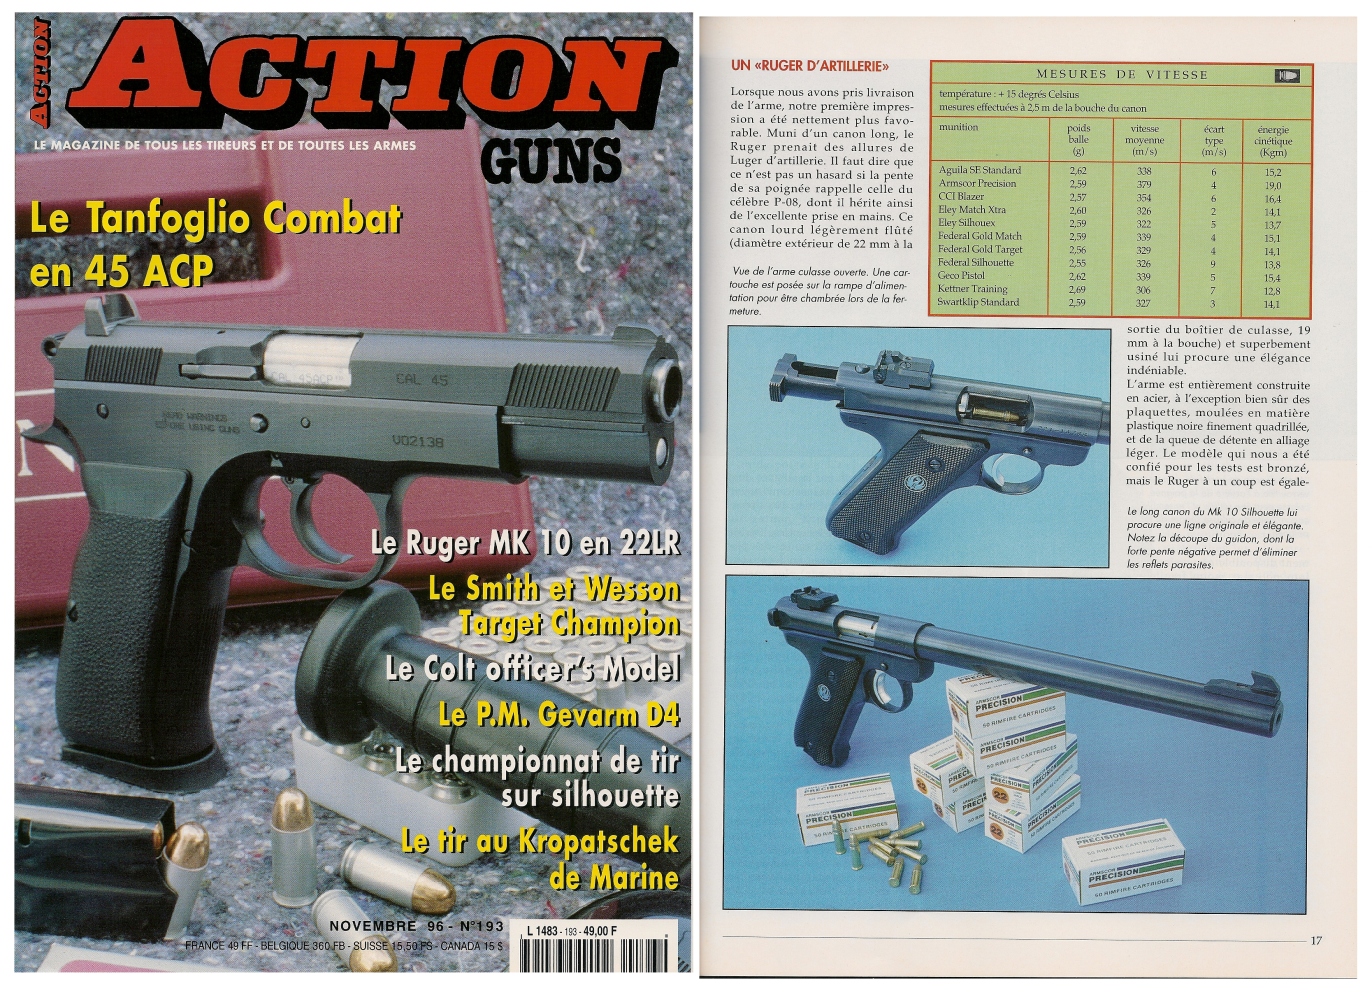 Le banc d'essai du pistolet Ruger Mark 10 Silhouette a été publié sur 5 pages dans le magazine Action Guns n°193 (novembre 1996). 